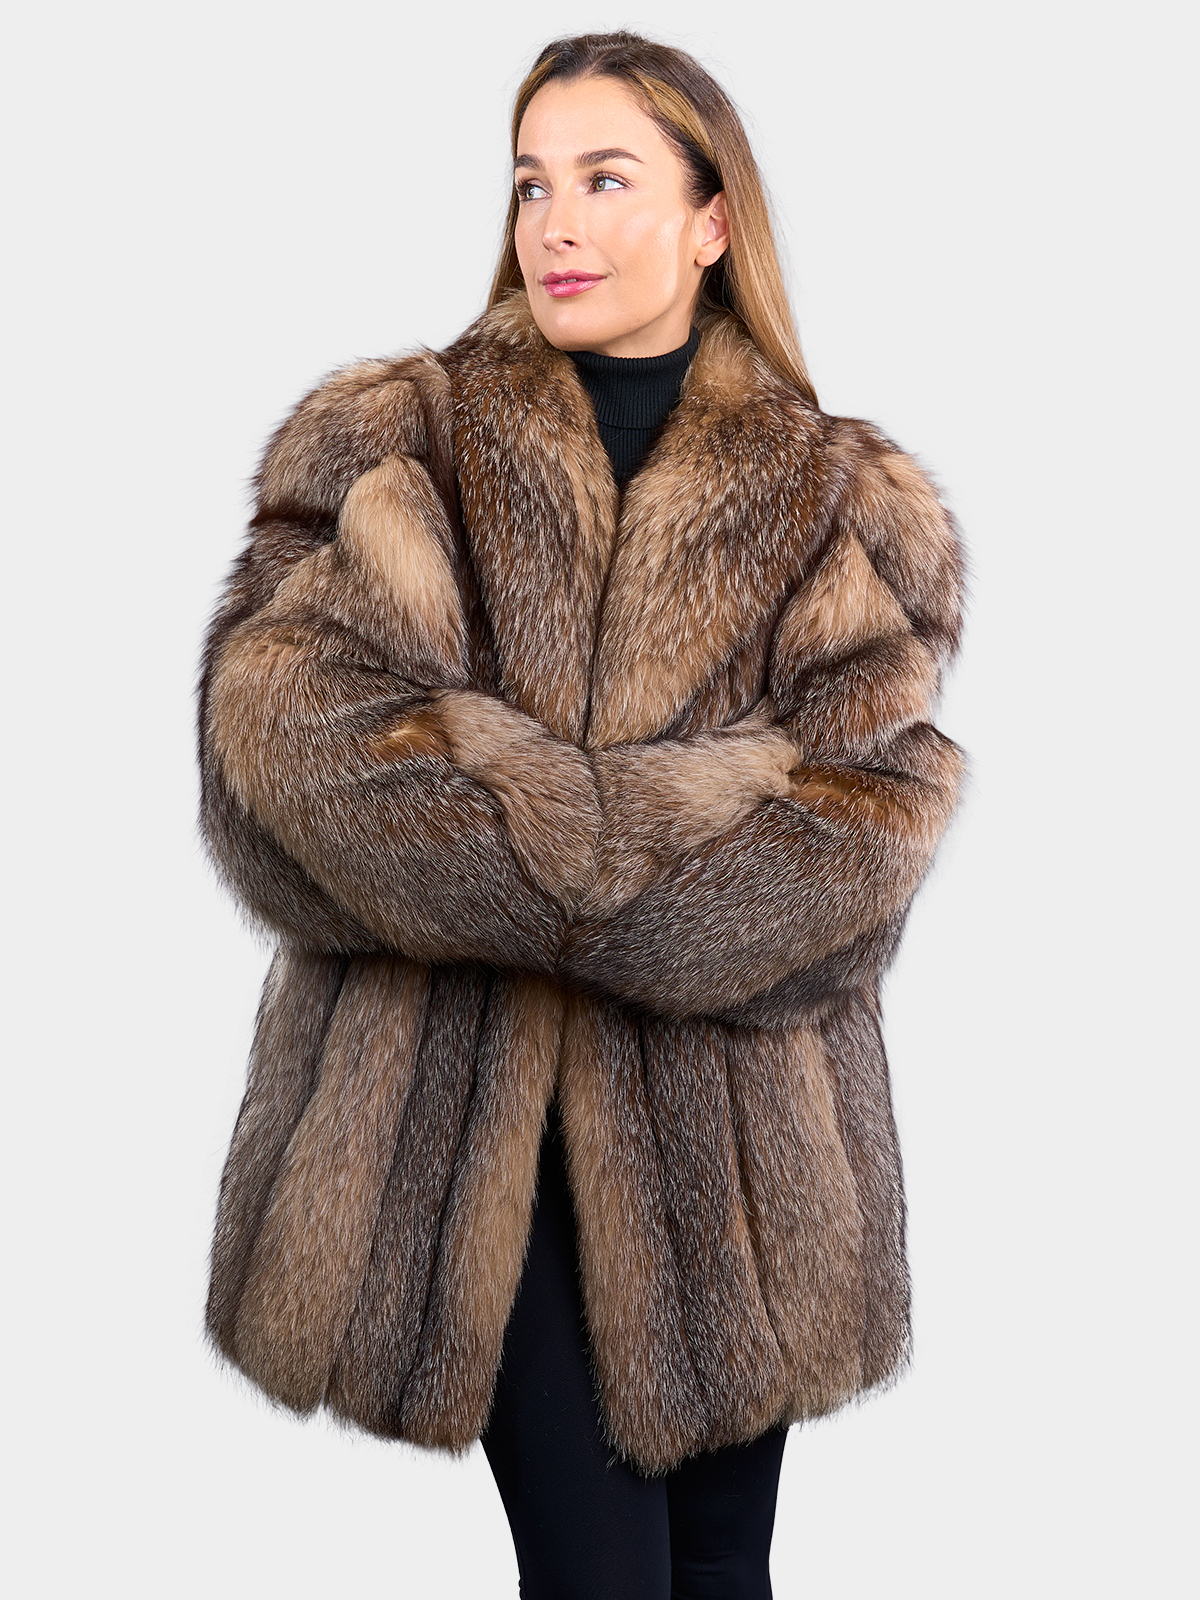 Gucci Tourmaline Mink Fur Jacket (Small) - Estate Furs